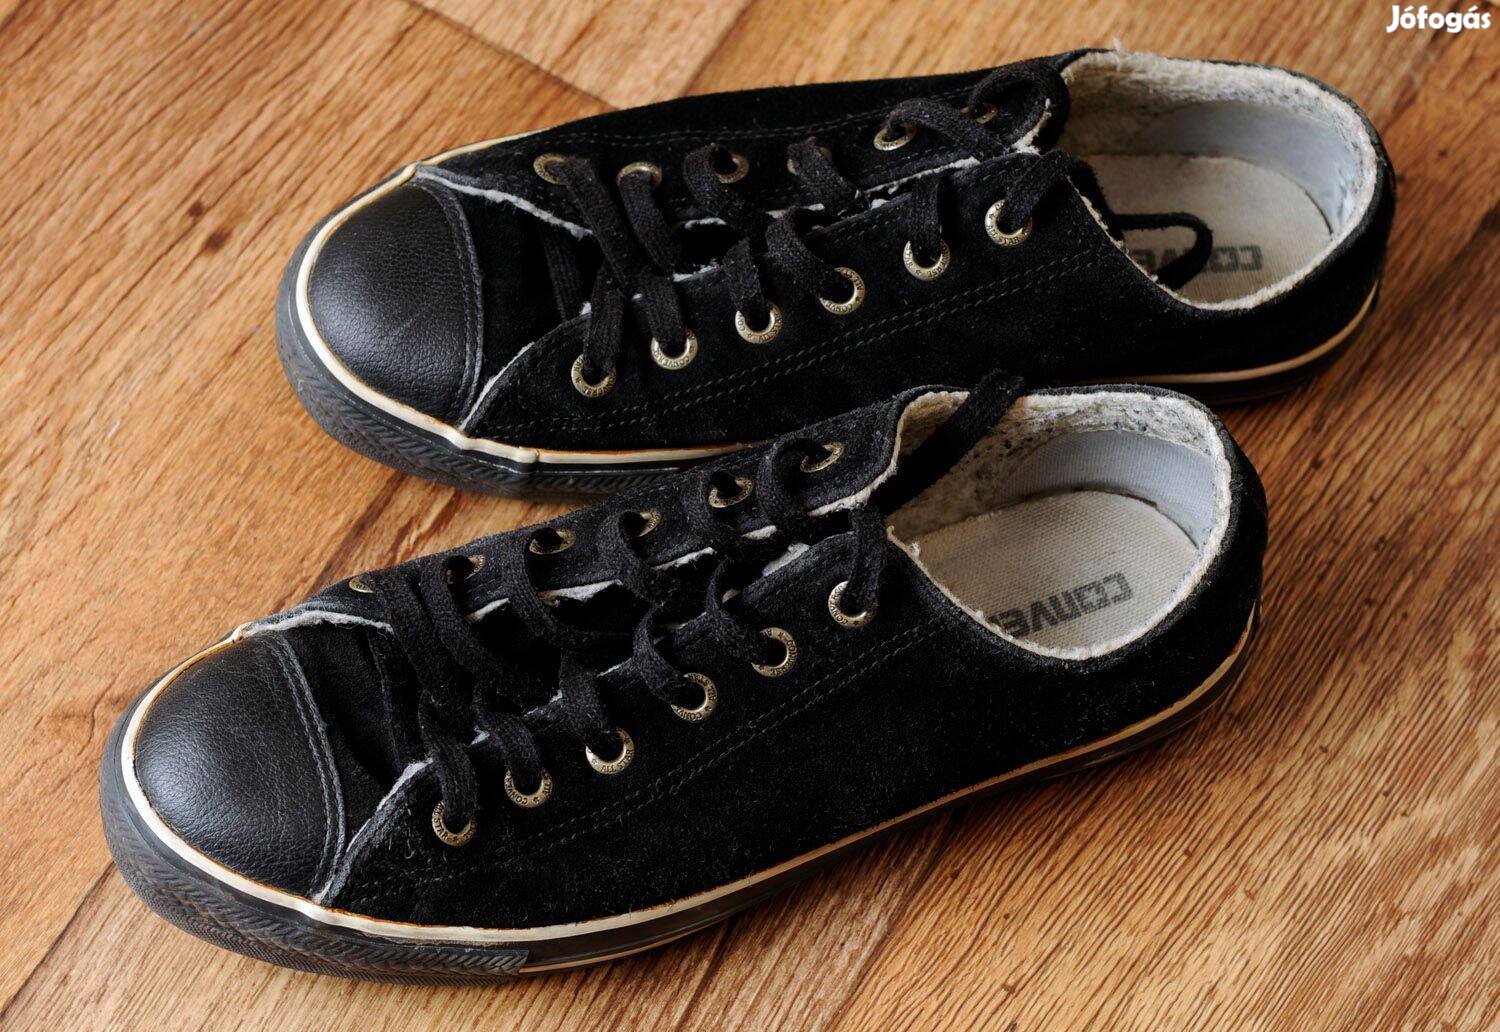 Eredeti Converse bélelt tornacipő eladó. Mindenhol jelzett, ritkaság